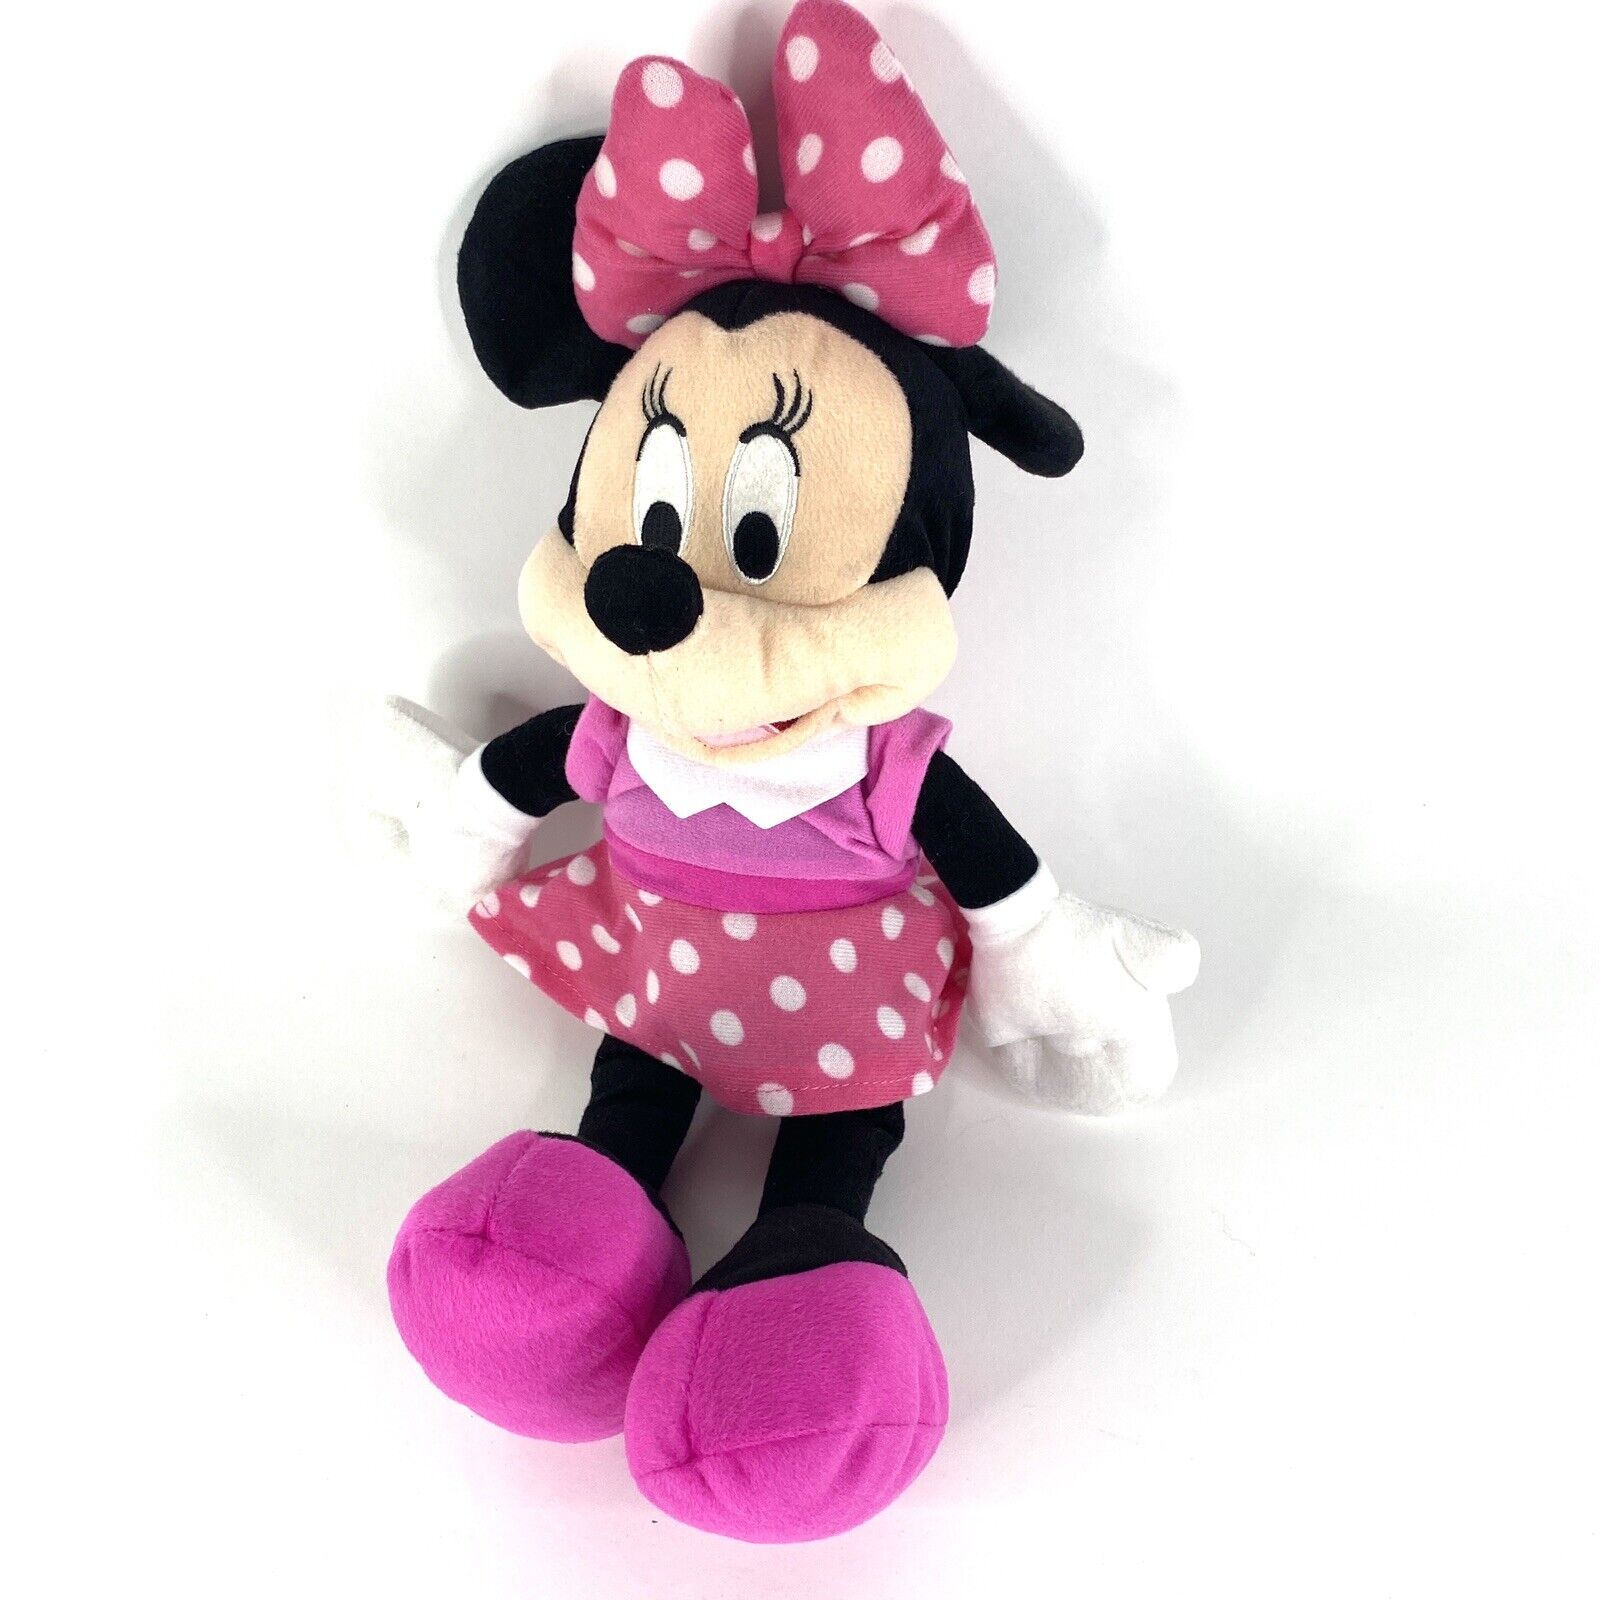 Disney Mini Mouse Pink White Polka Dot Bow Stuffed Animal Plush Toy 16 in